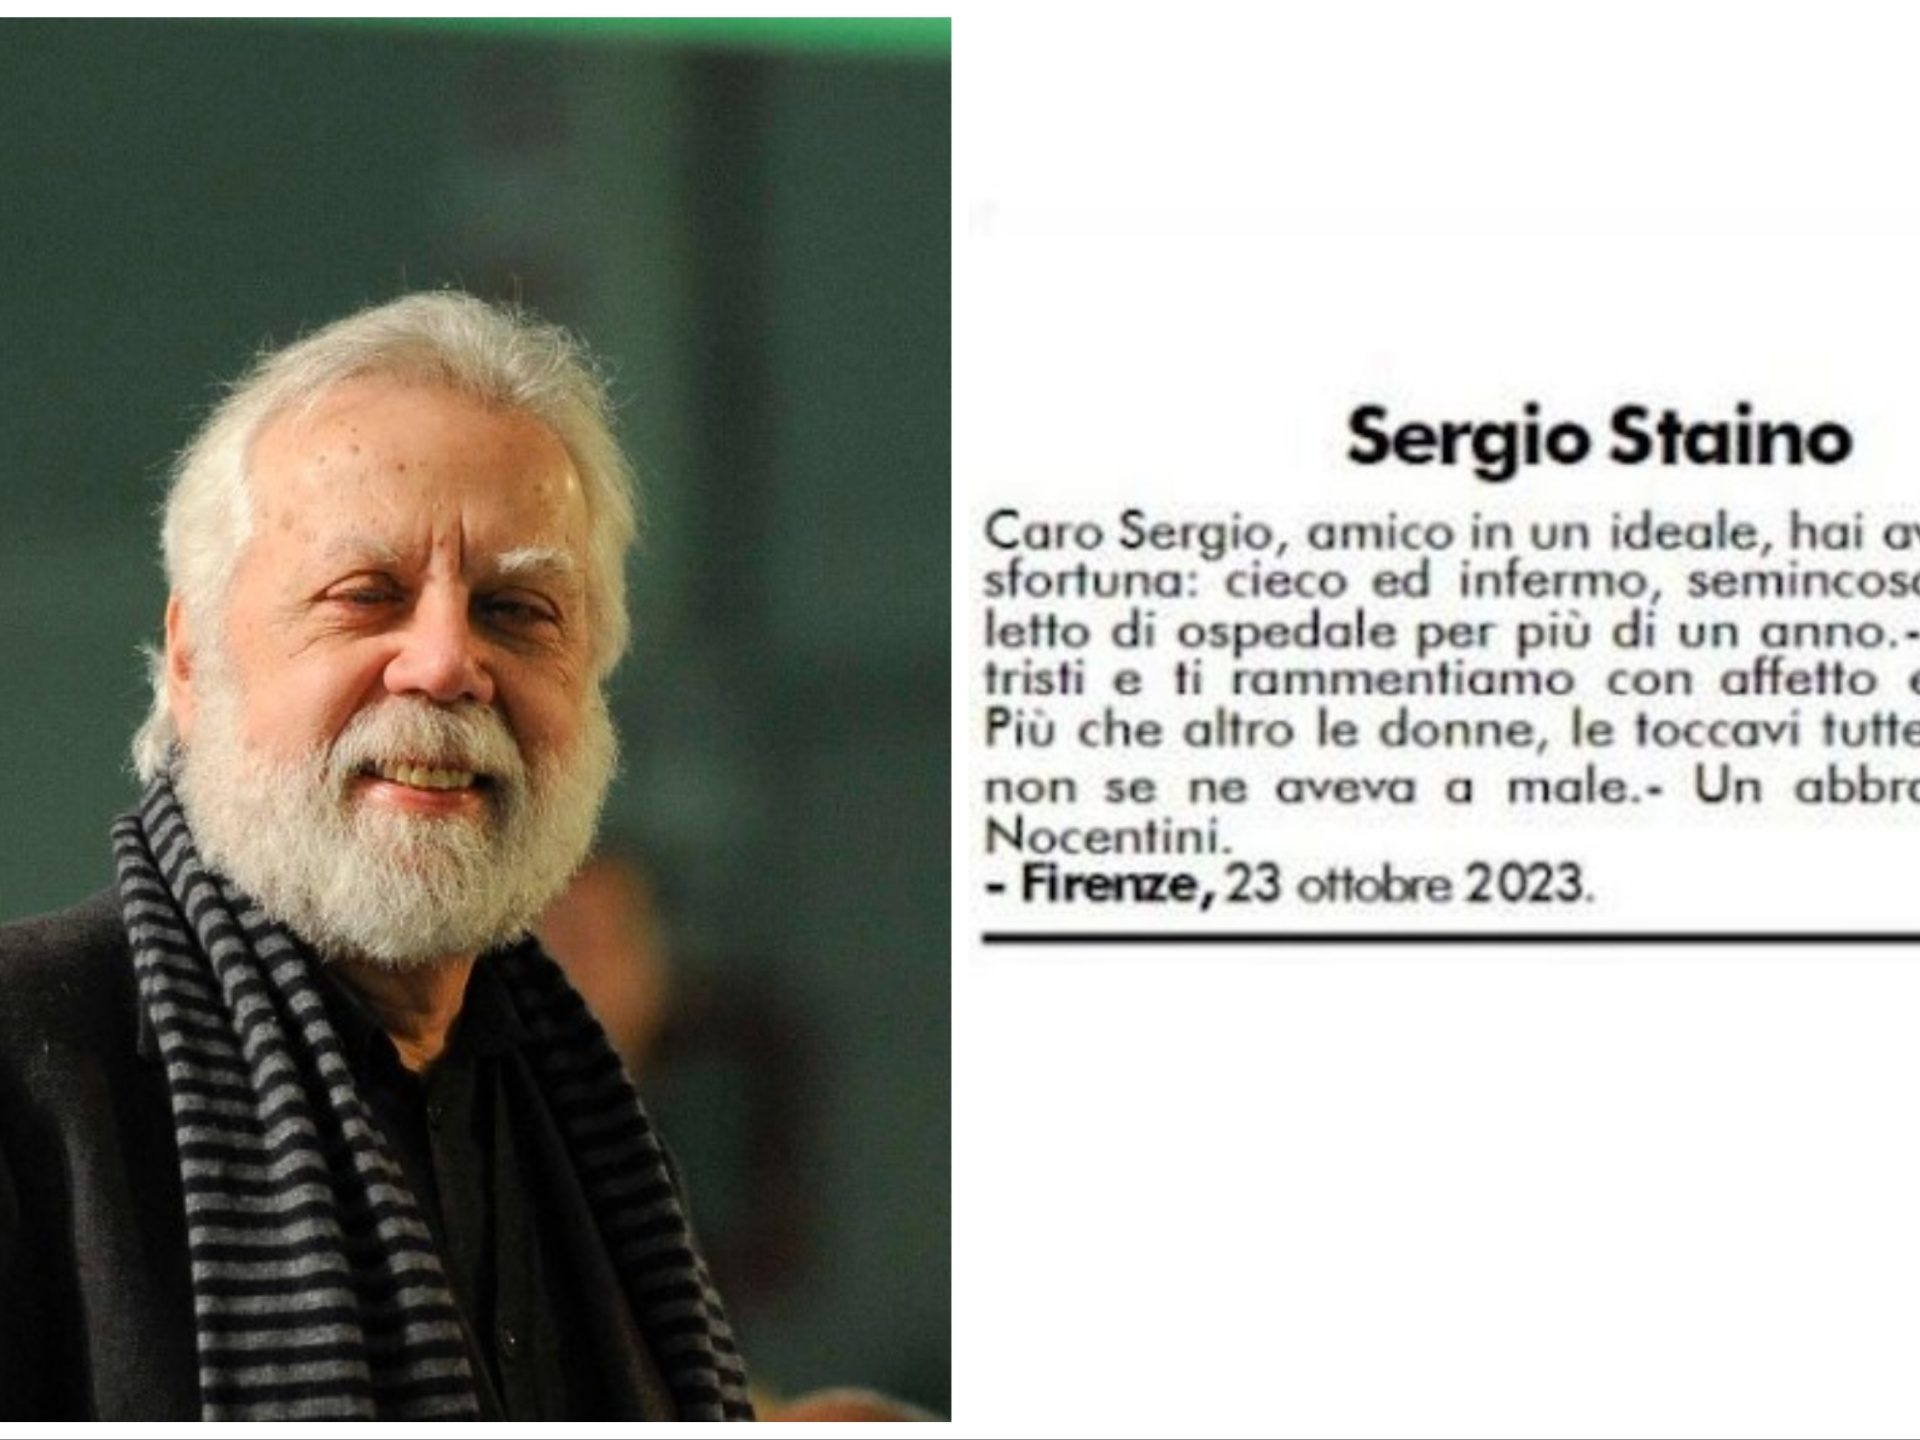 Sergio Staino e le toccatine alle donne: un necrologio scatena la polemica